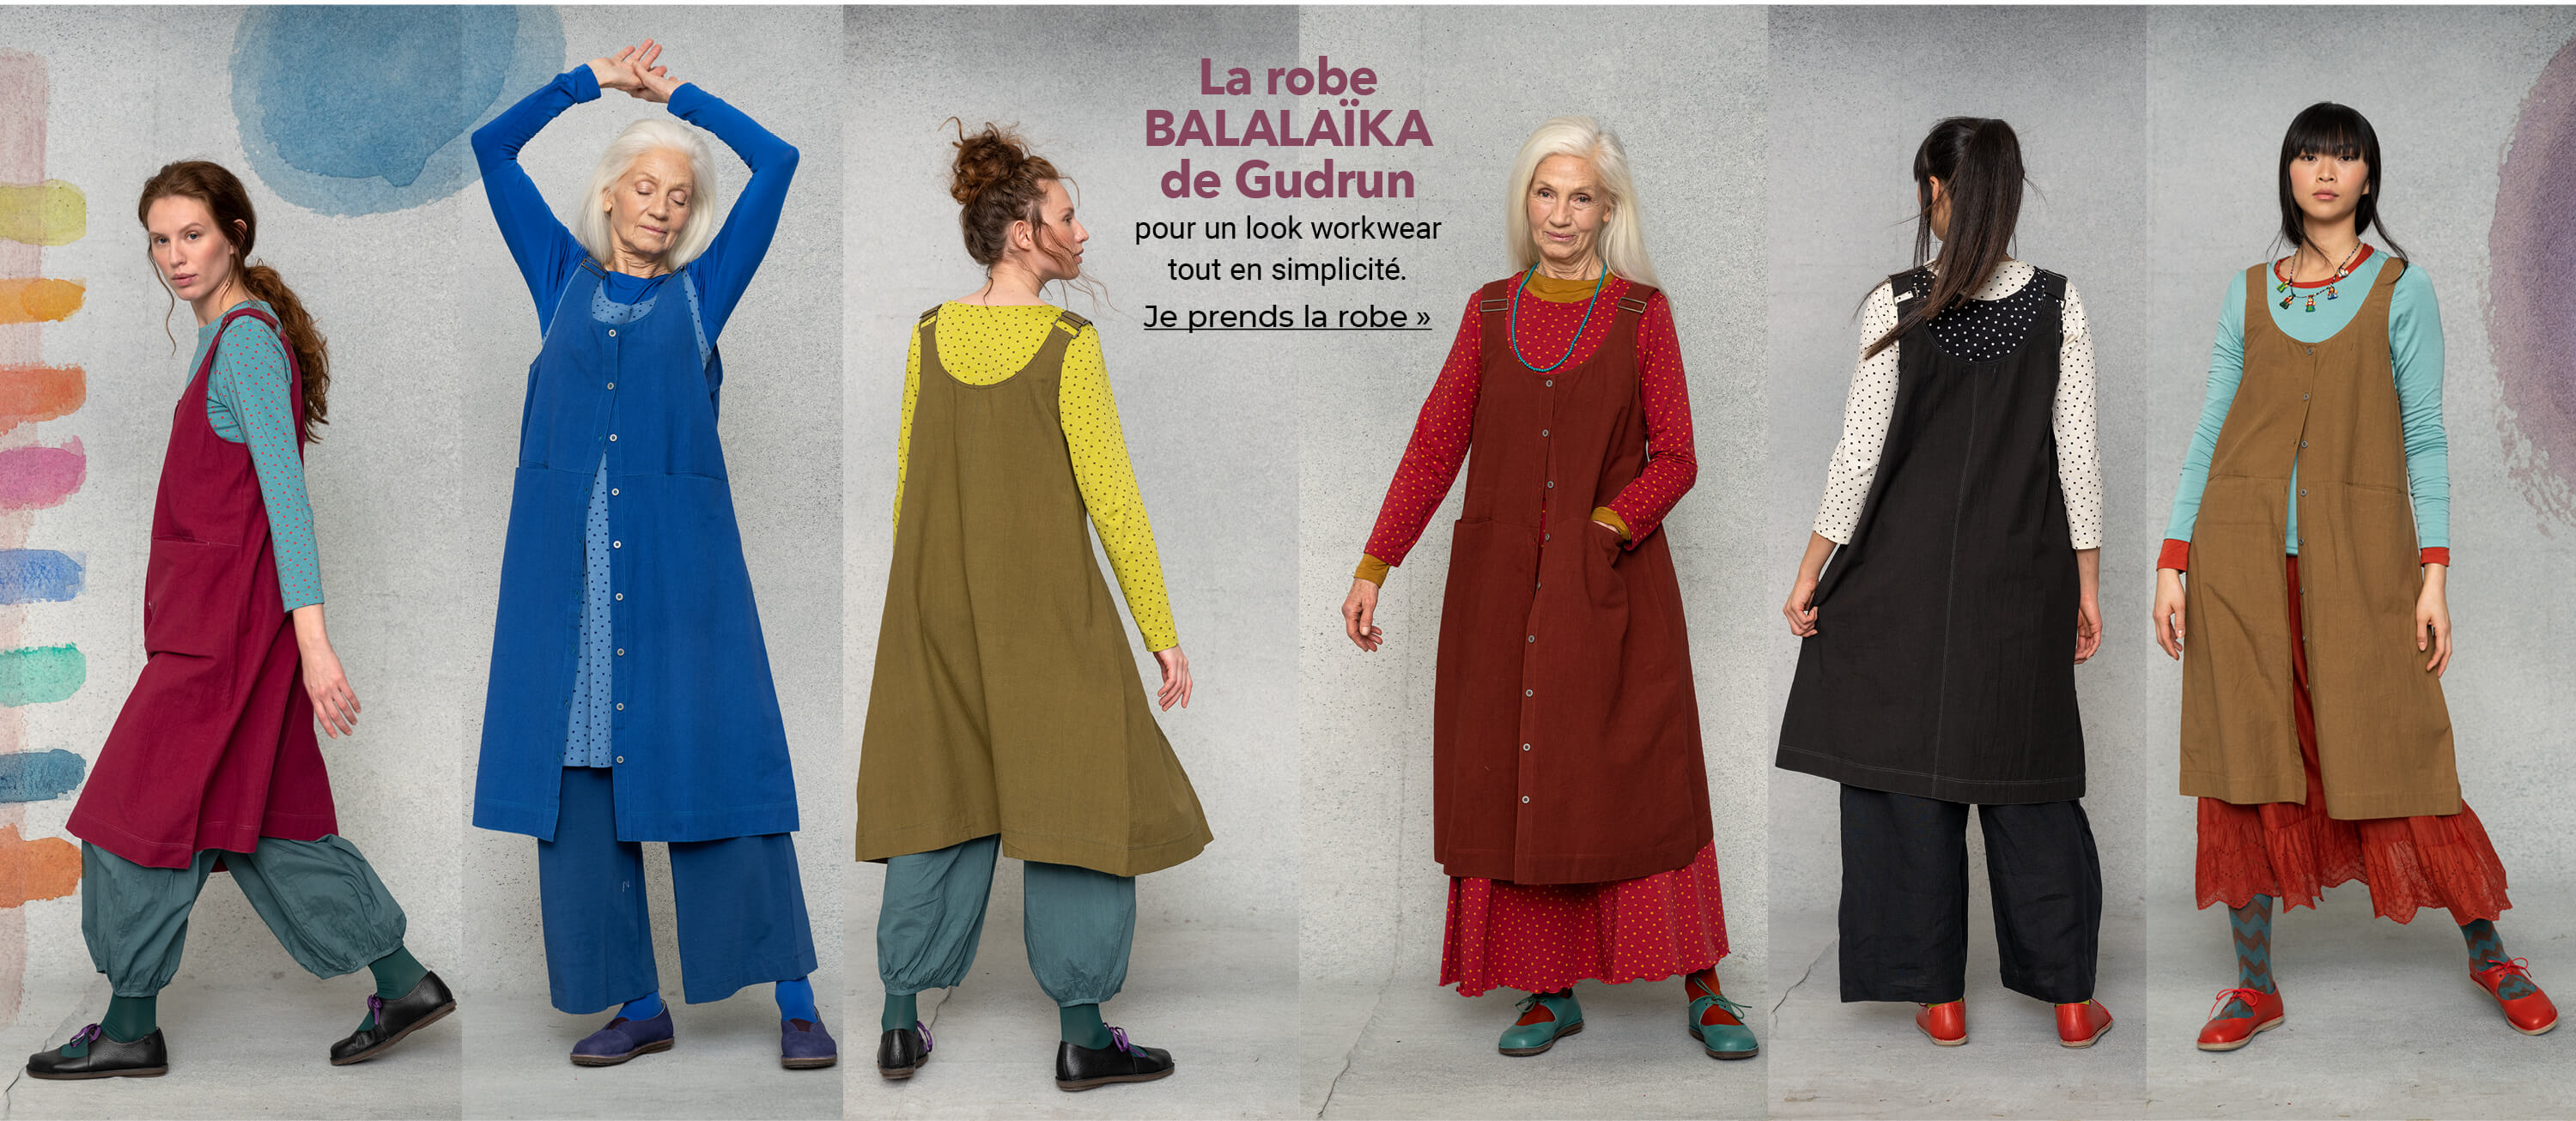 La robe balalaïka de Gudrun 